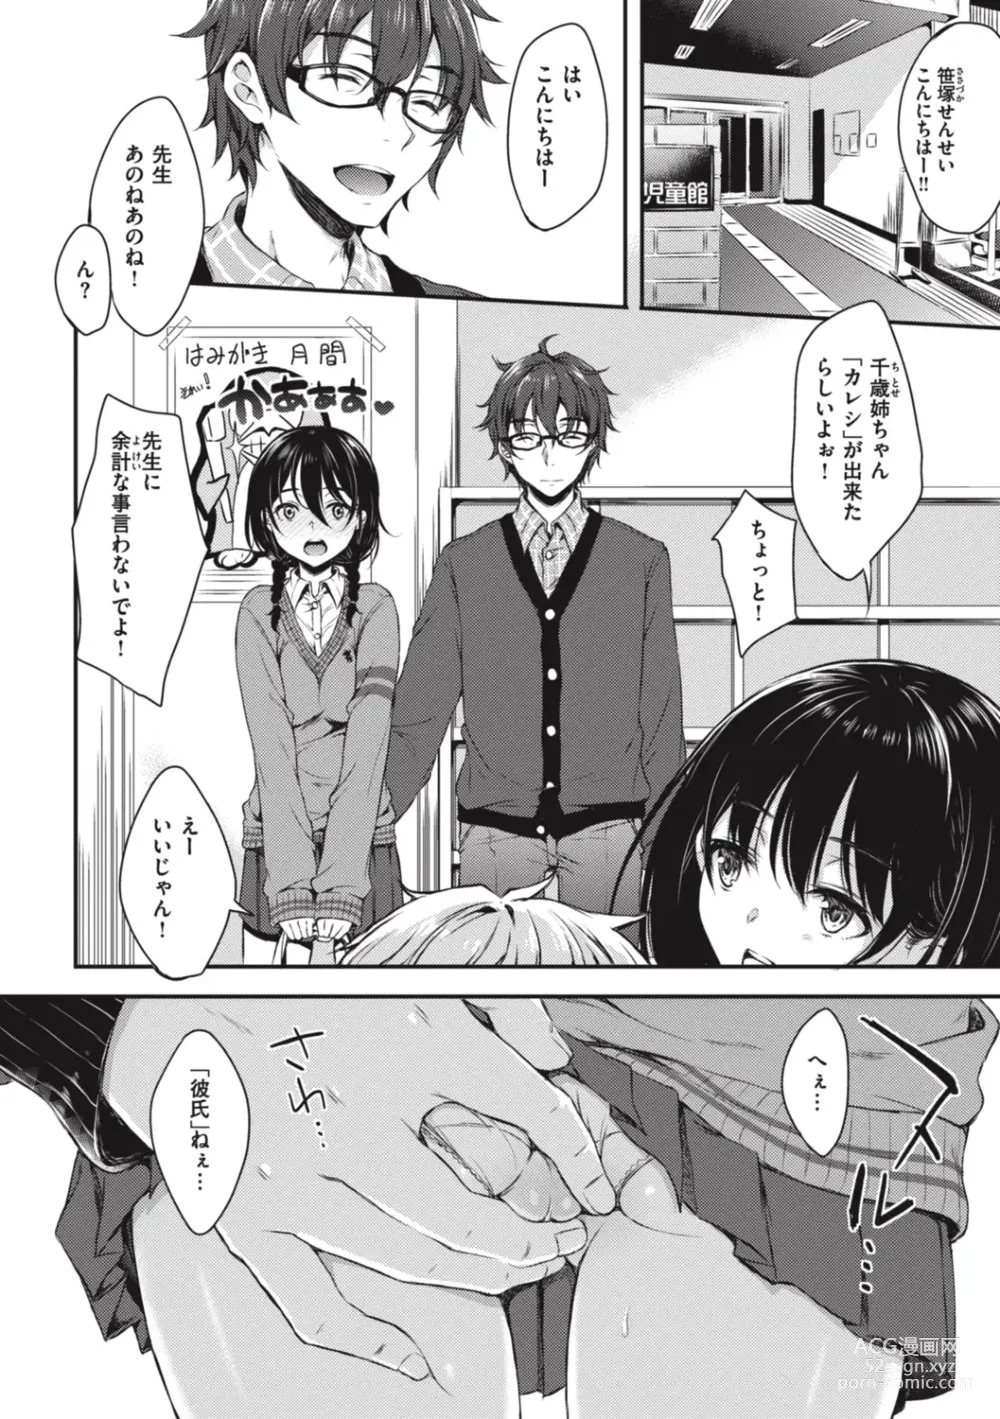 Page 6 of manga Onee-chan mo Watashi mo - Both My Sister and I are...